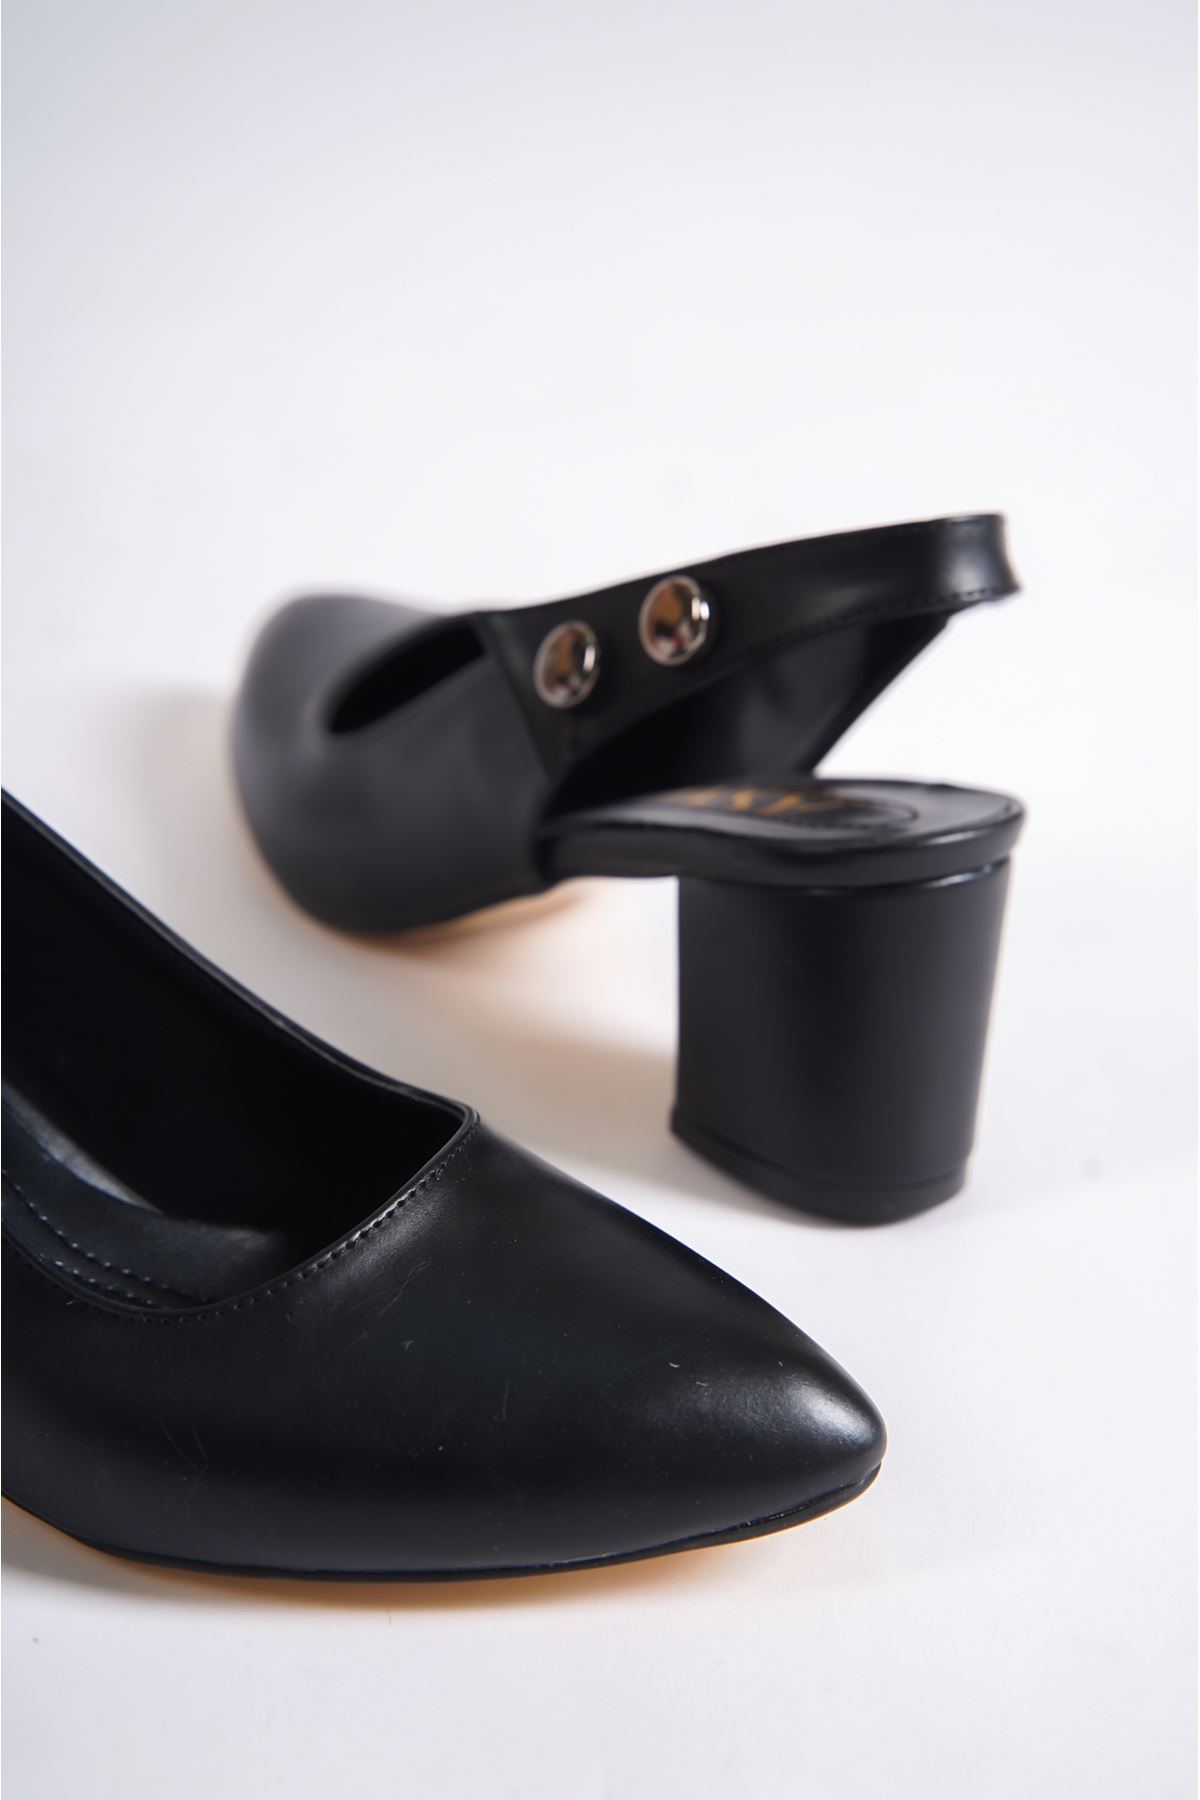 Henny Siyah Mat Deri Topuklu Kadın Ayakkabı